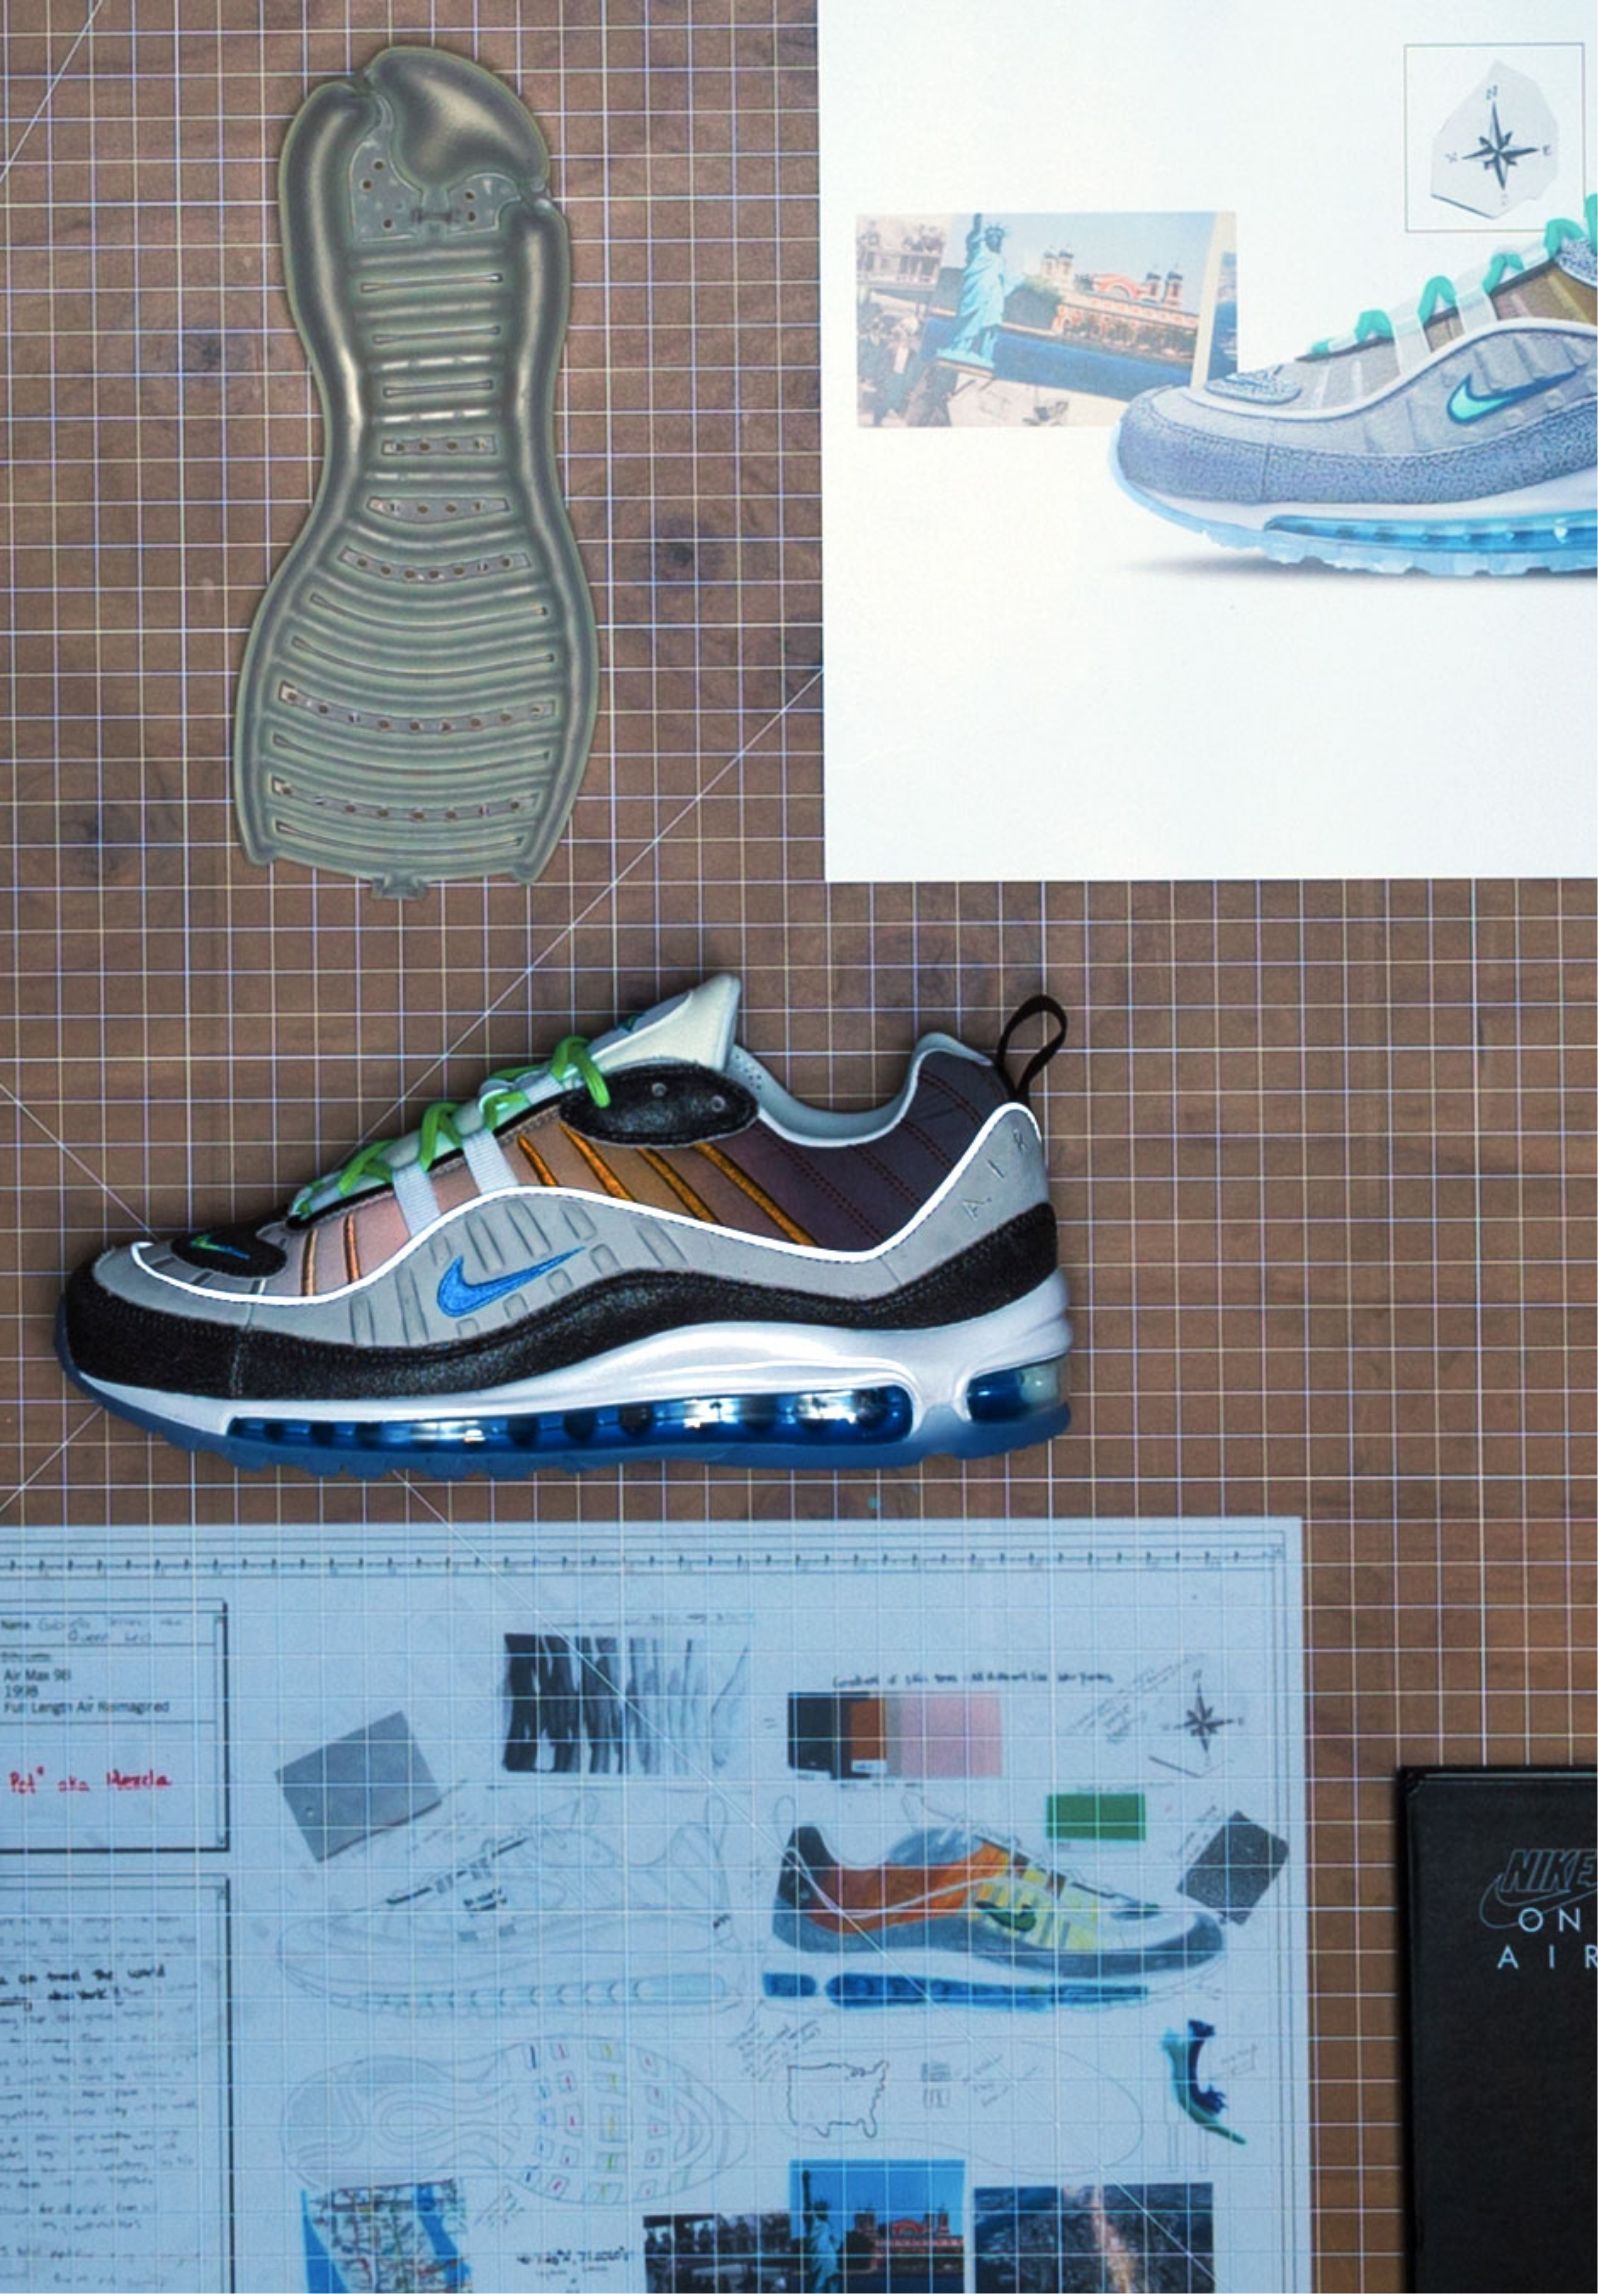 Air max 98 la mezcla design sketches and final shoe